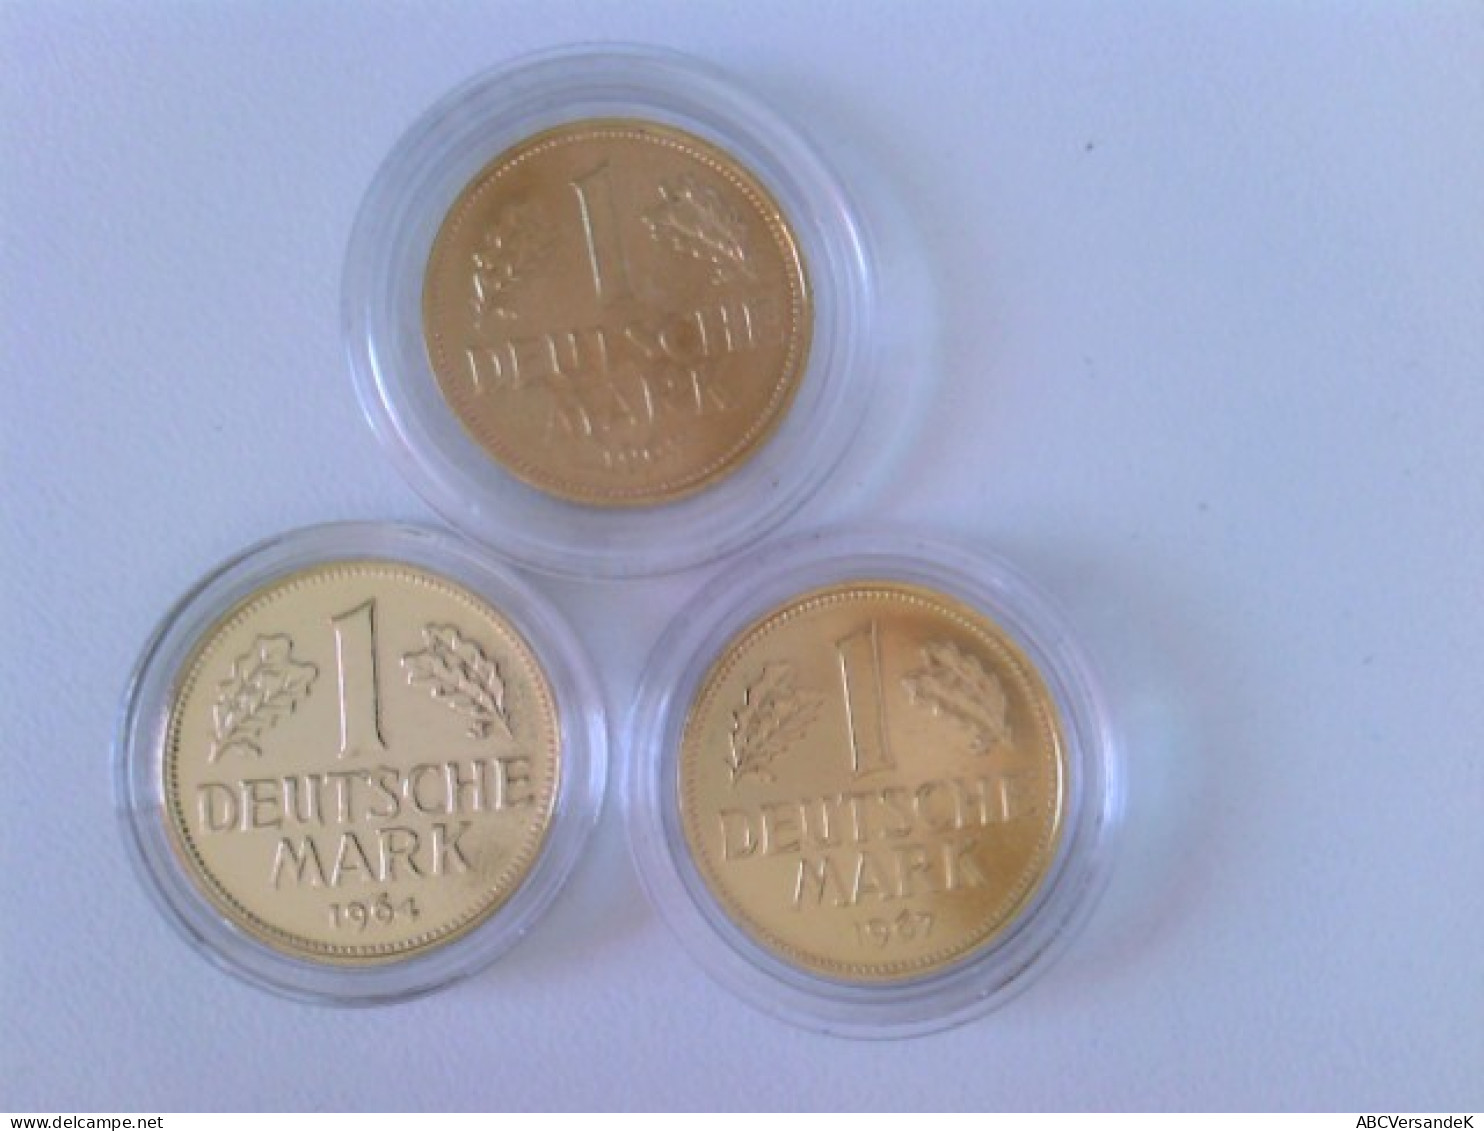 Münzen/ Medaillen: Hier 2 X 1 DM 1950 + 1955, Deutsche Mark Mit 24 Karat Goldauflage, In Kapsel. - Numismatiek